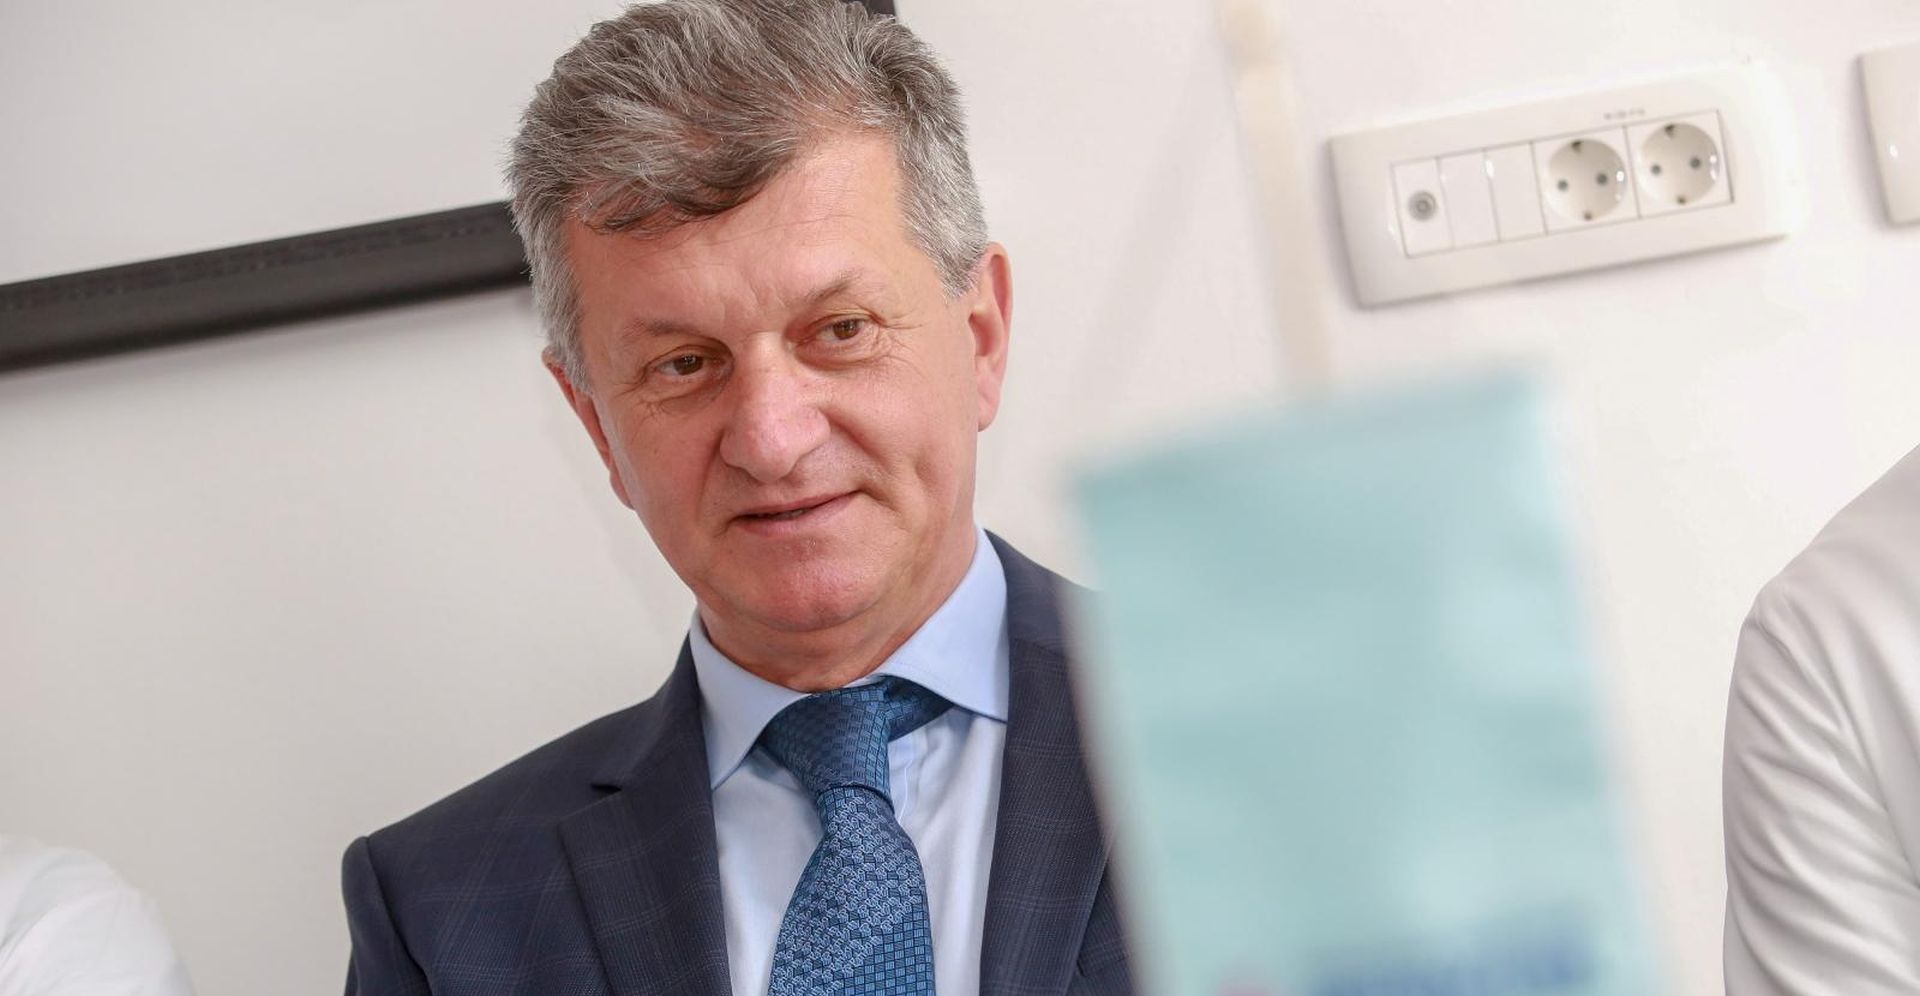 27.05.2019., Zagreb - Ministar zdravstva Milan Kujundzic u posjeti bolnici KB Merkur.
Photo: Matija Habljak/PIXSELL